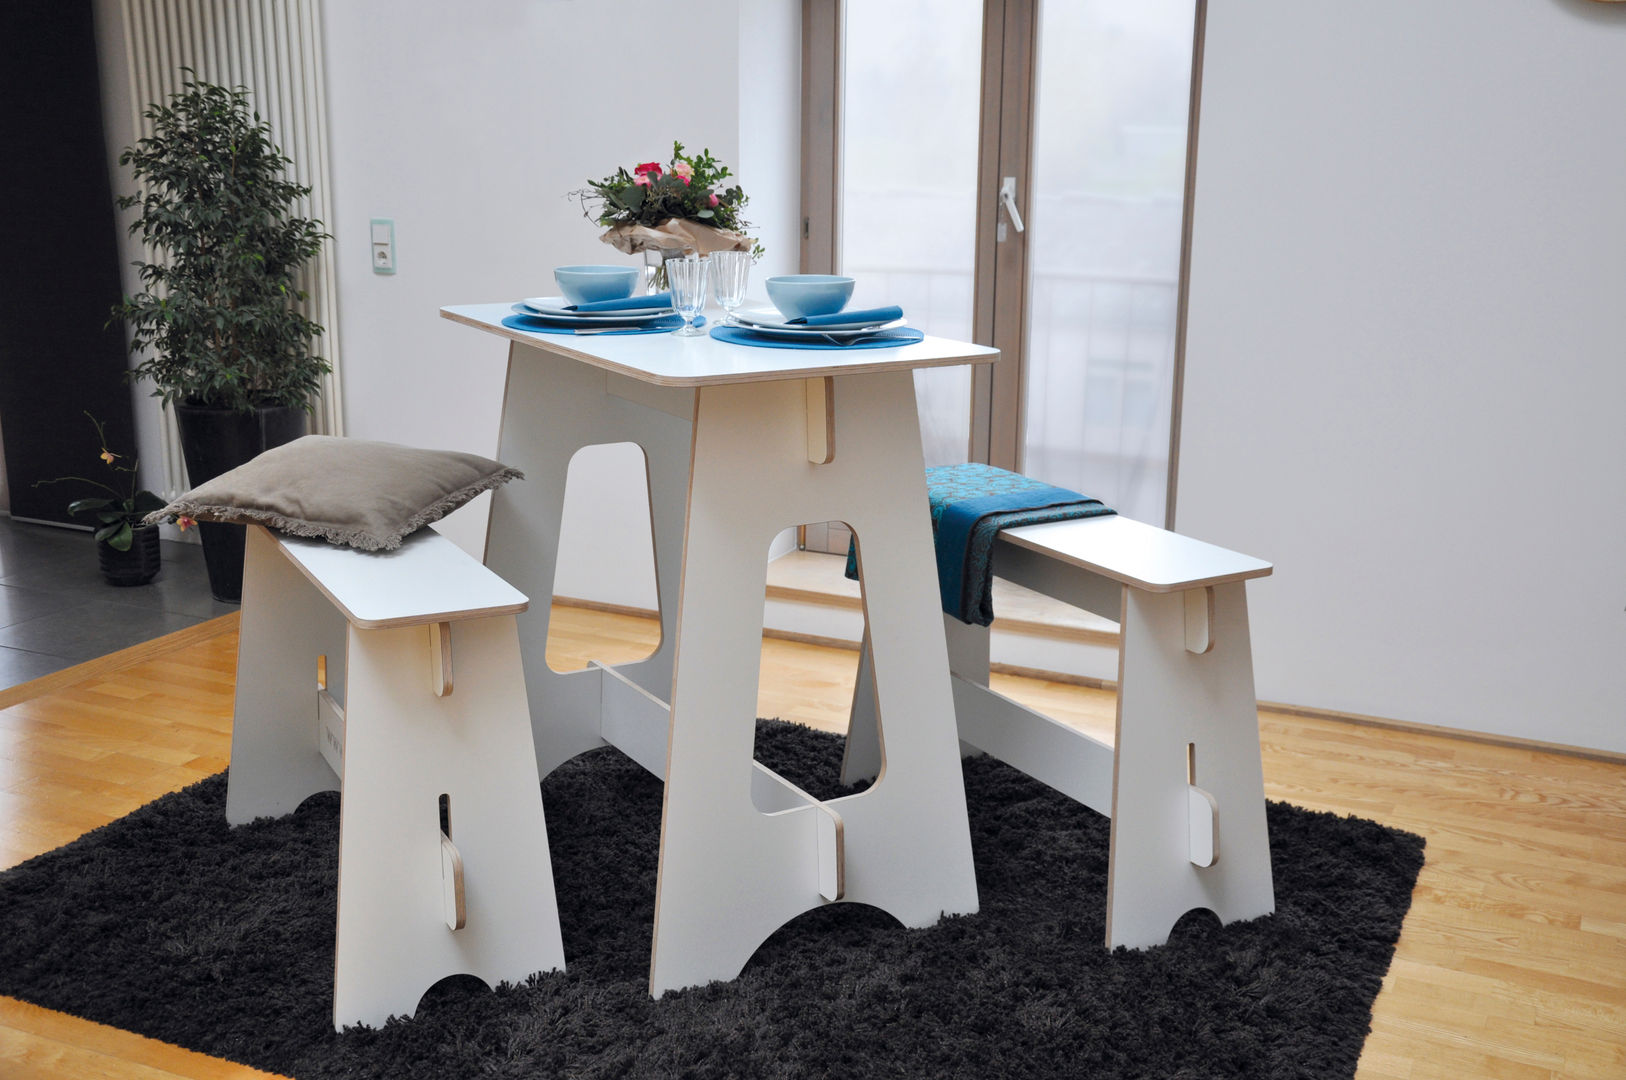 Steckmöbel Event-Tisch, das wunschmöbel das wunschmöbel Moderne eetkamers Tafels